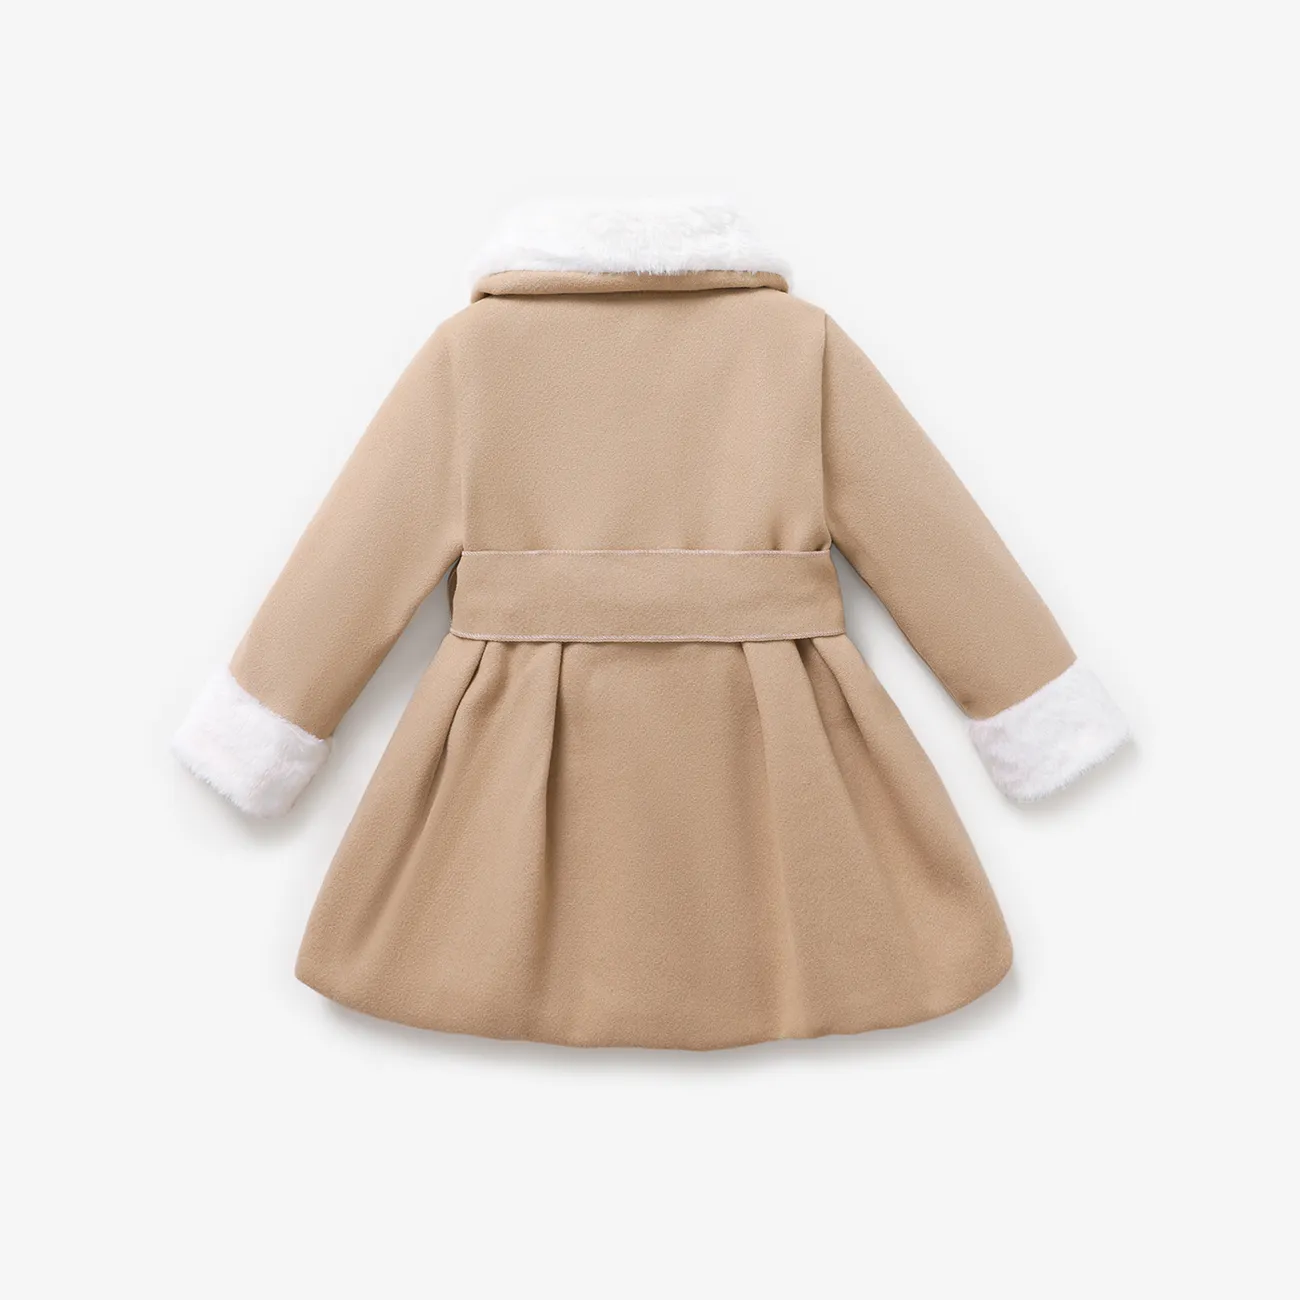 Toddler menina doce botão design casaco de lã  Cor de Caqui big image 1